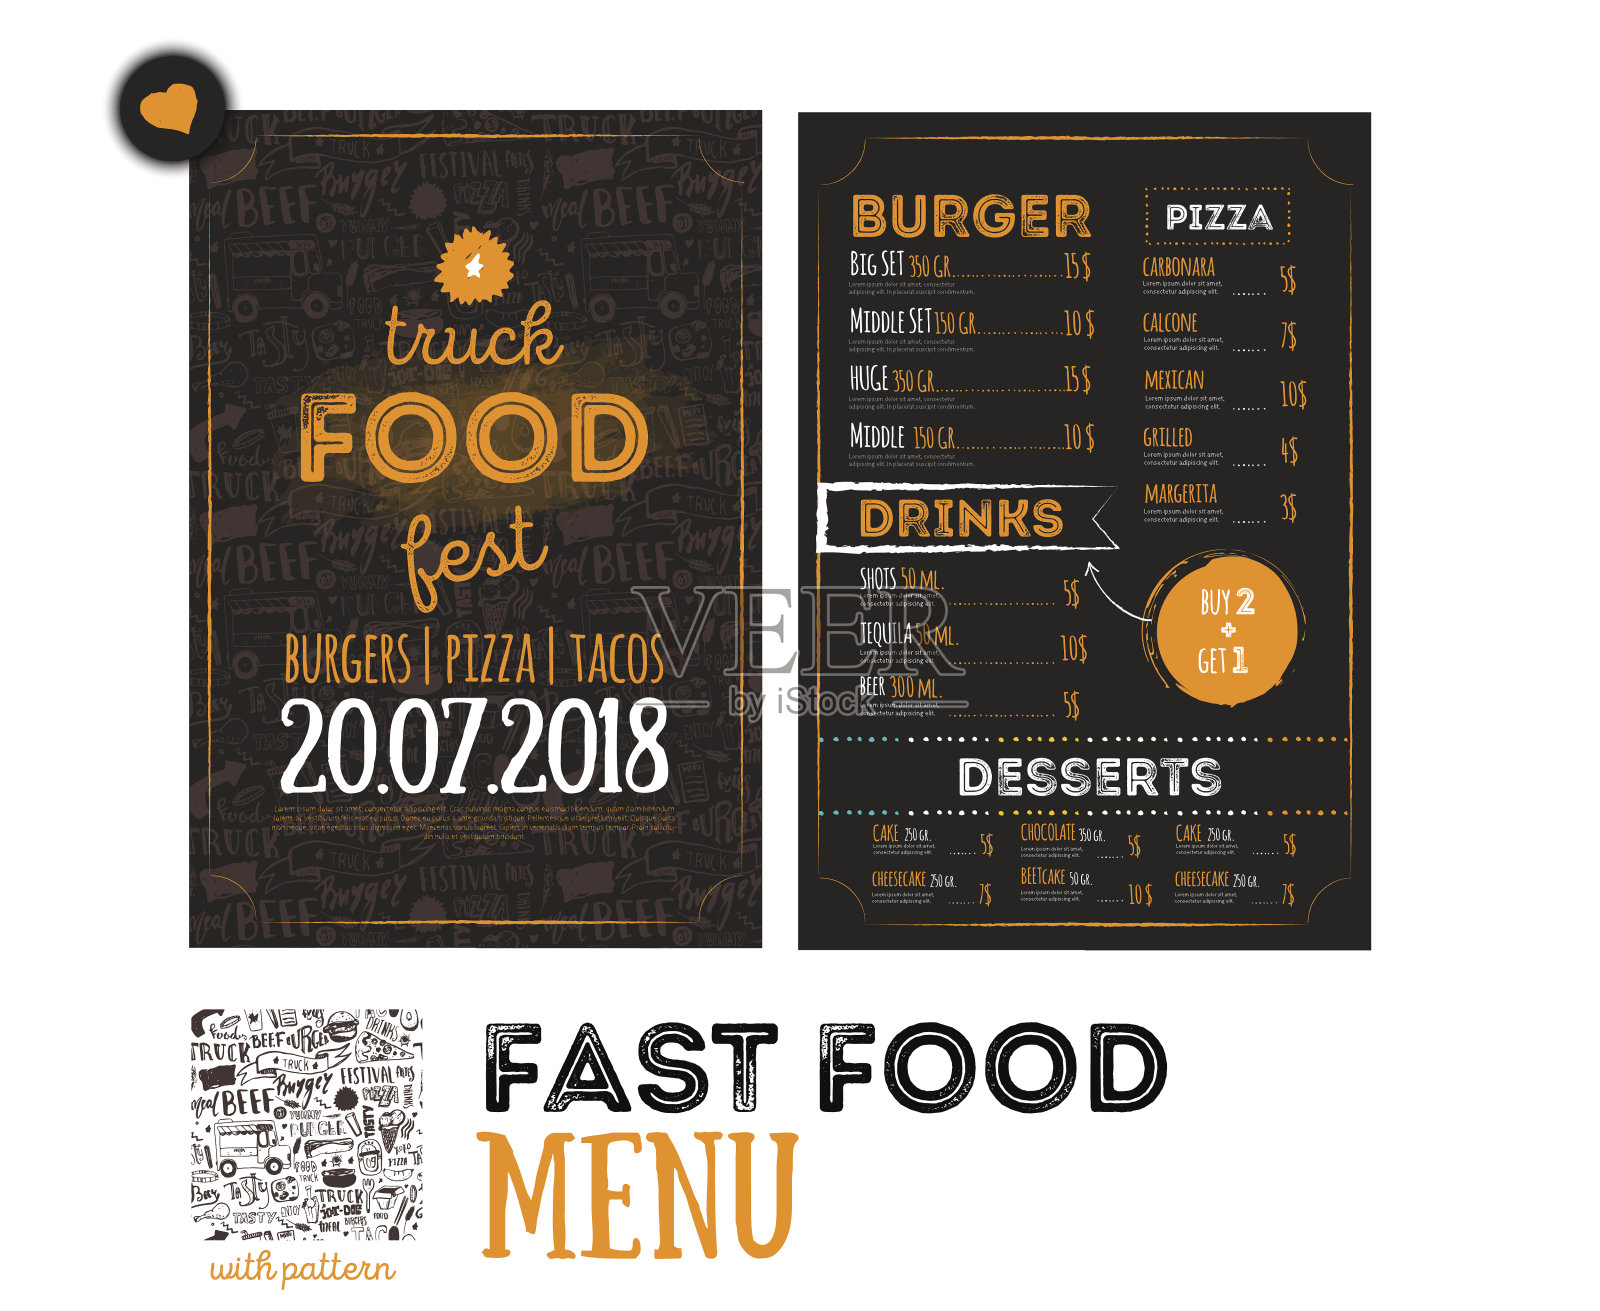 街头垃圾美食节菜单封面设计。节日设计模板与手绘图形元素和字母。向量的菜单。设计模板素材